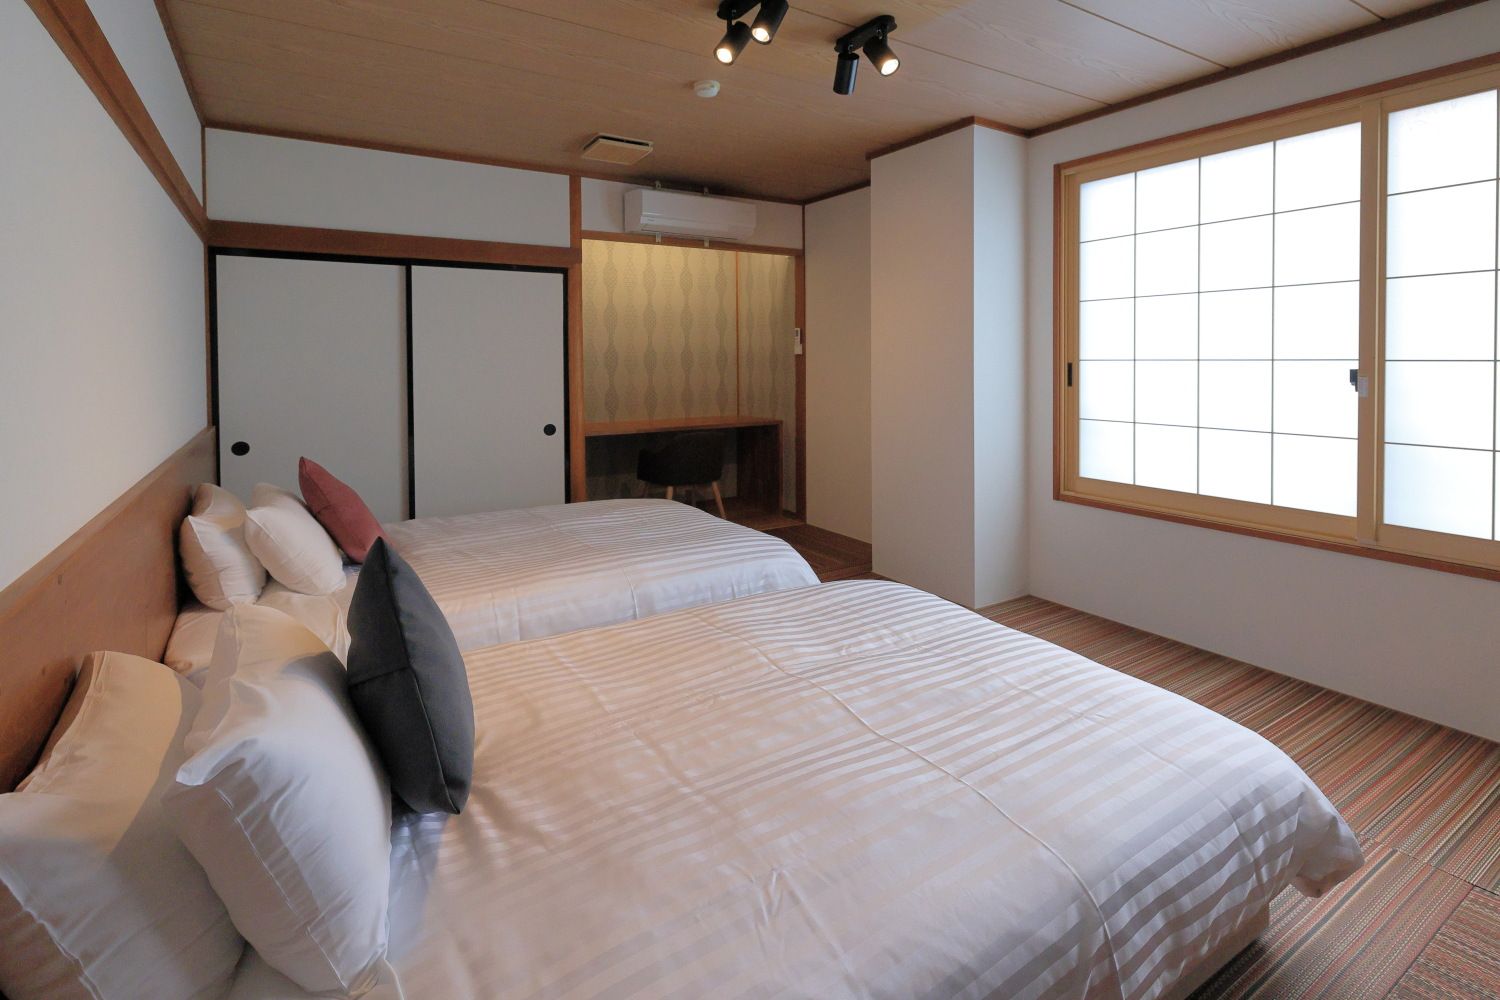 Volcano Room/ボルケーノルーム：畳のお部屋にセミダブルのベット。落ち着いた雰囲気で快適な